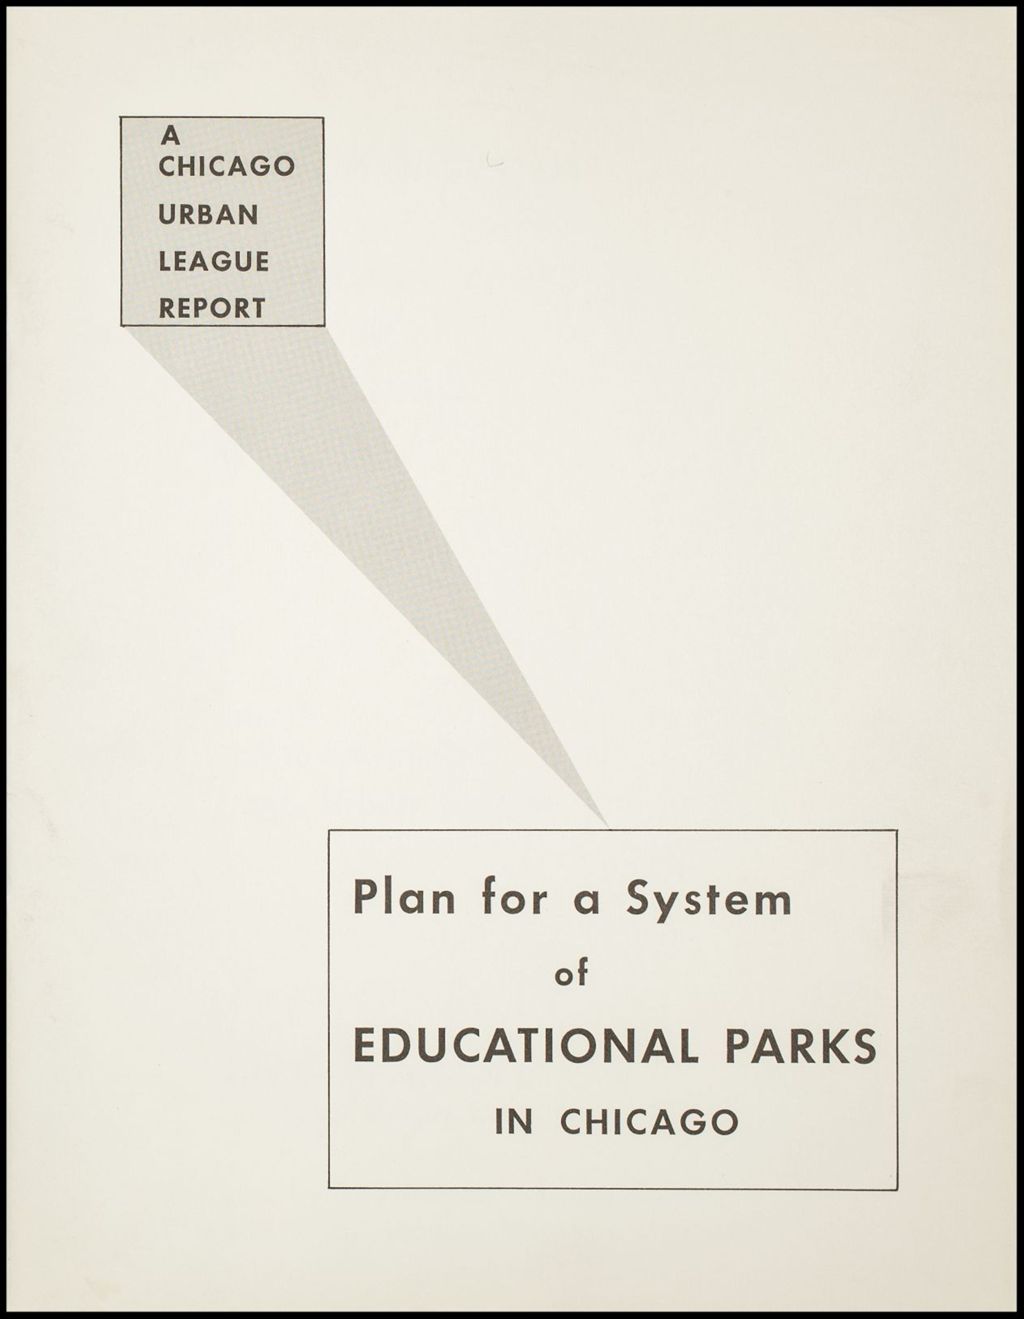 Miniature of Annual Reports, 1958-1968 (Folder I-33)